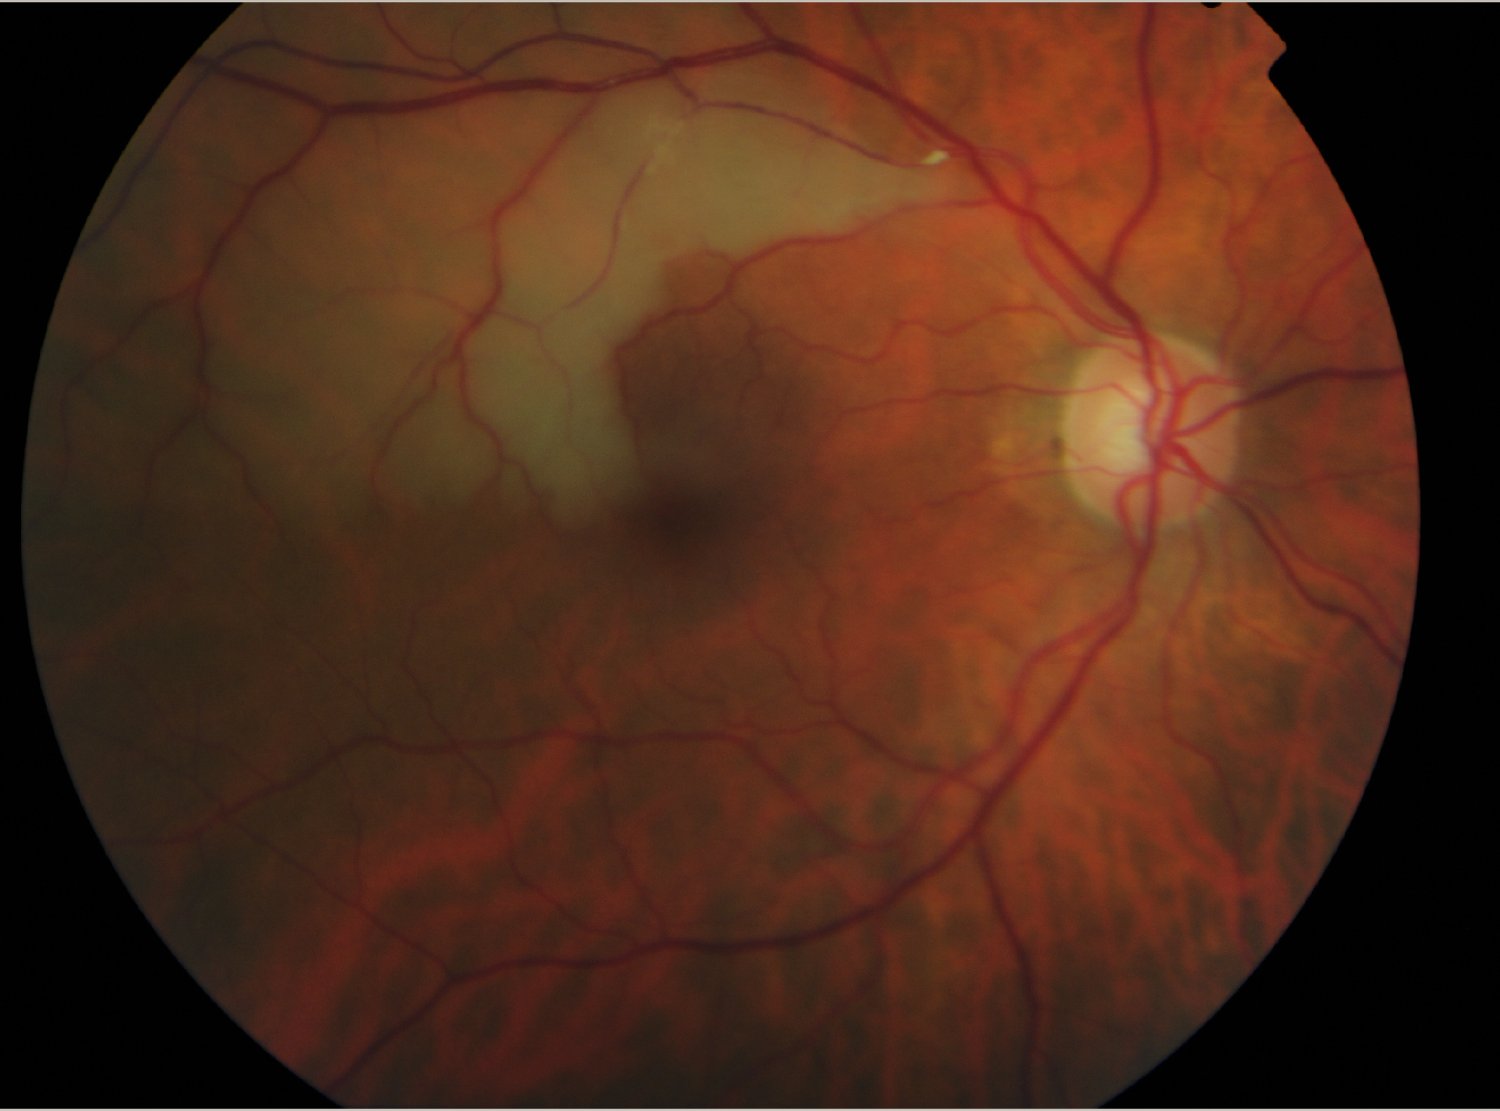 Clot in retina